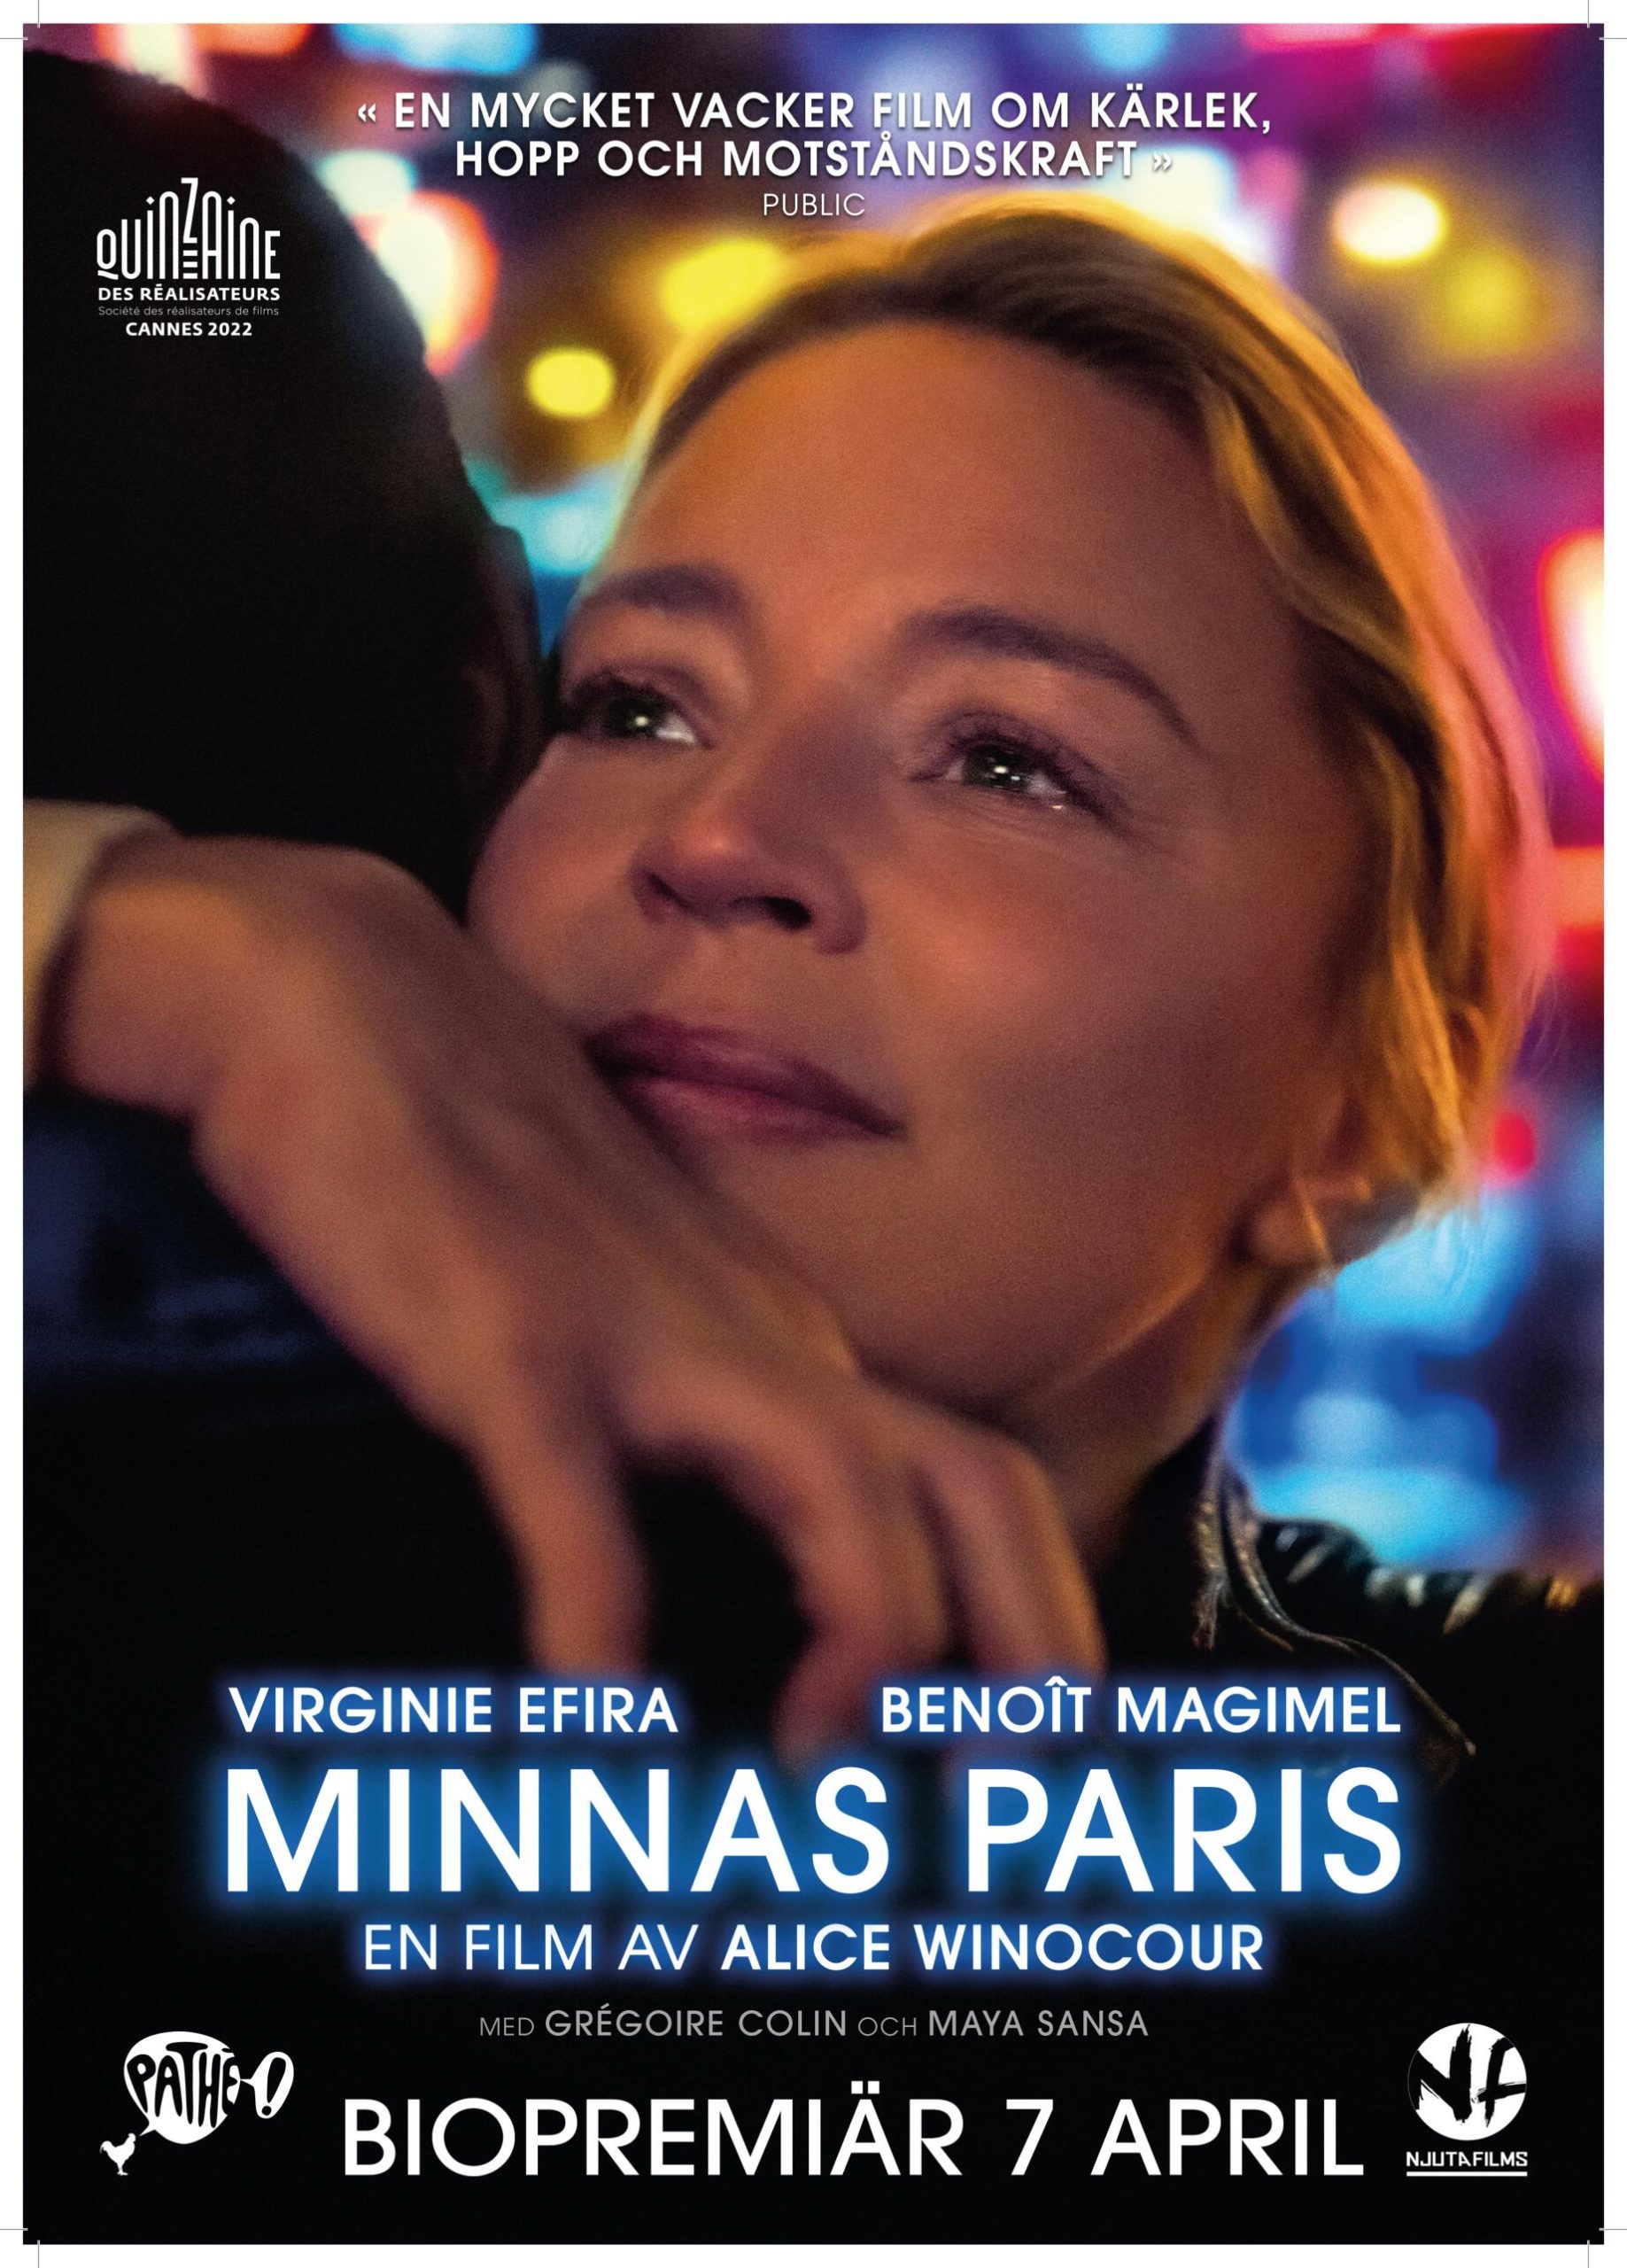 MINNAS PARIS